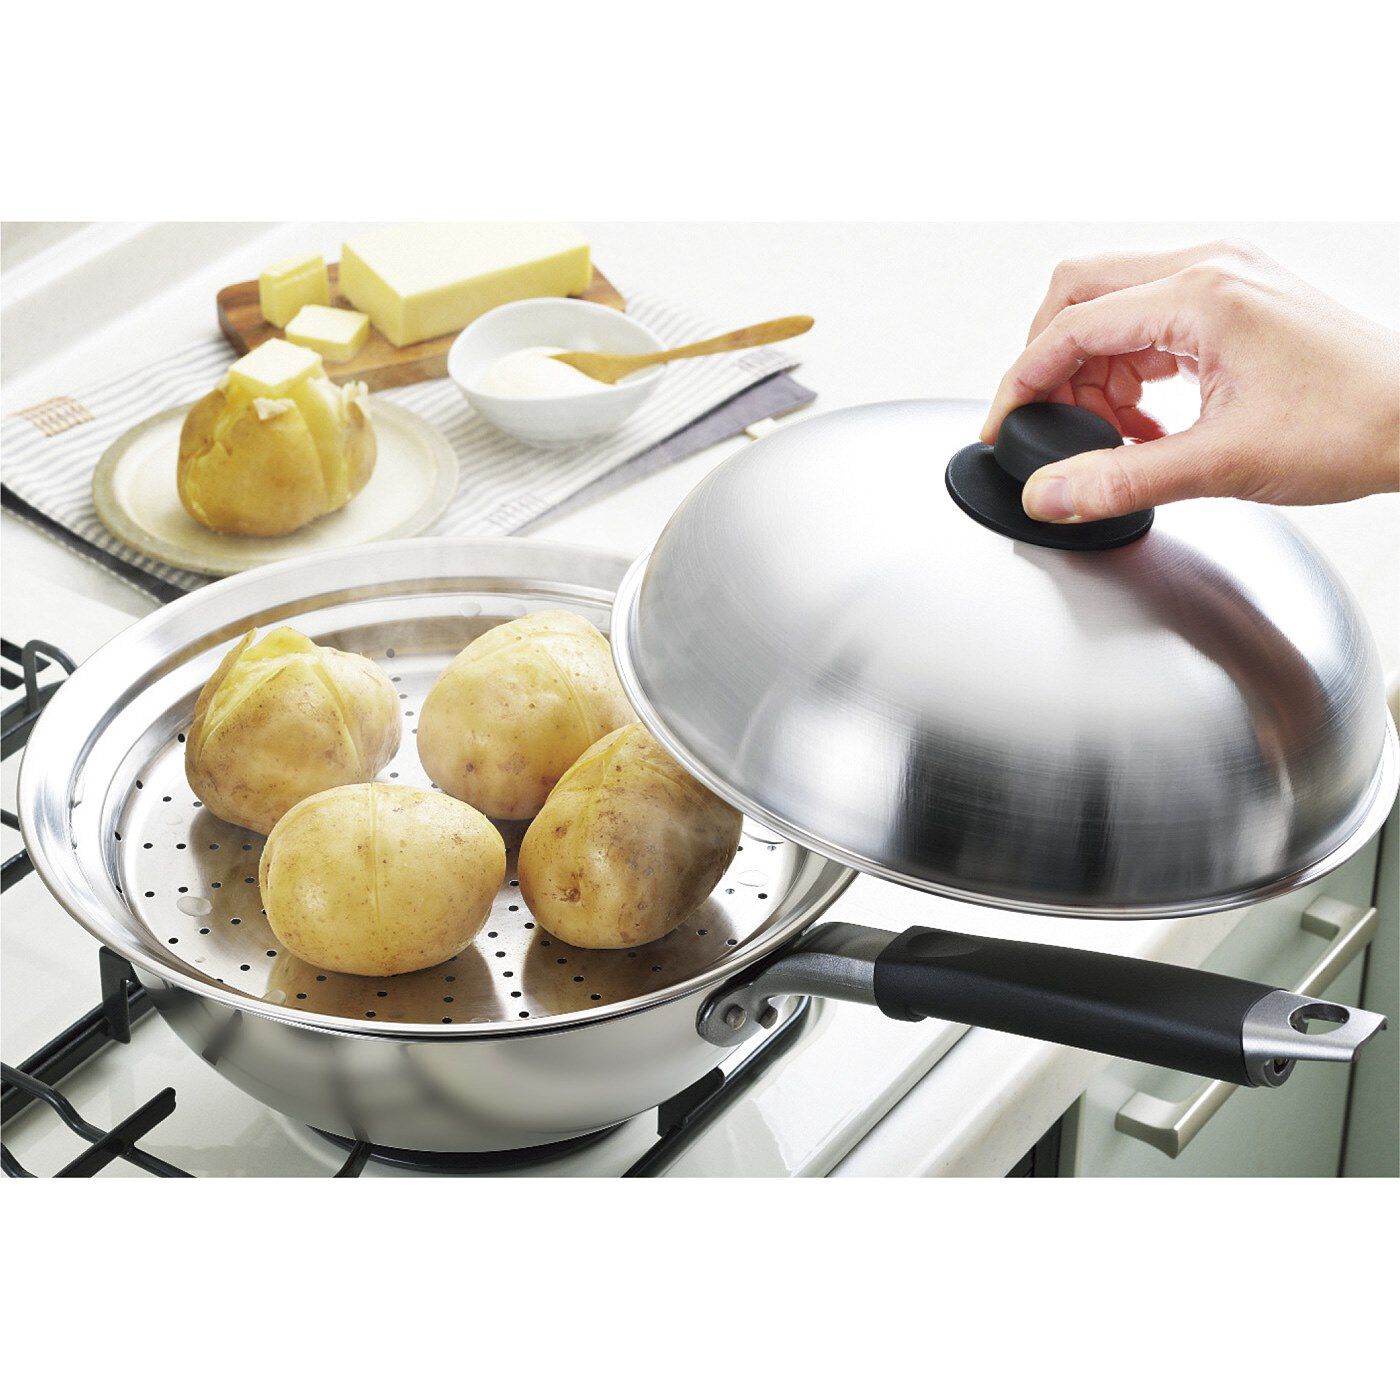 フェリシモの雑貨 Kraso|フライパンをフル活用！蒸す時にのせてそのままお皿にのせられるフライパン蒸し器|フライパンにのせるだけで本格的な蒸し料理の完成。プレート自体が大きいから、一度にたくさん蒸すことができます。